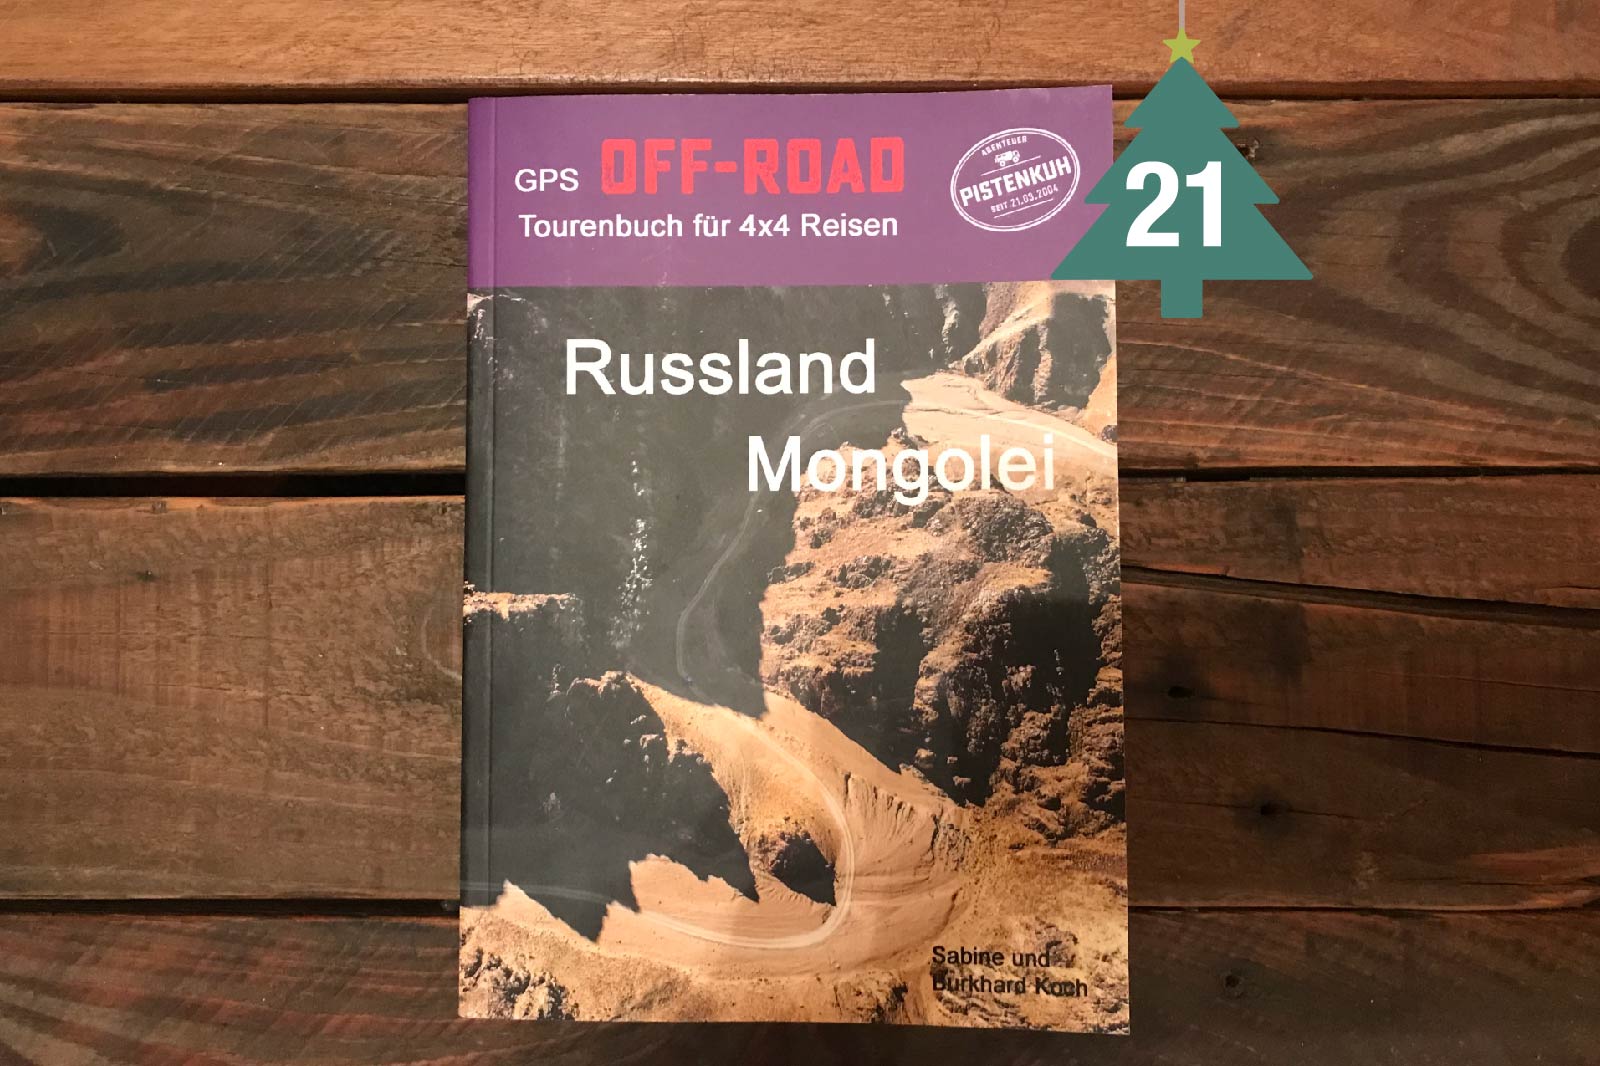 Pistenkuh Offroad-Tourenbuch Russland Mongolei